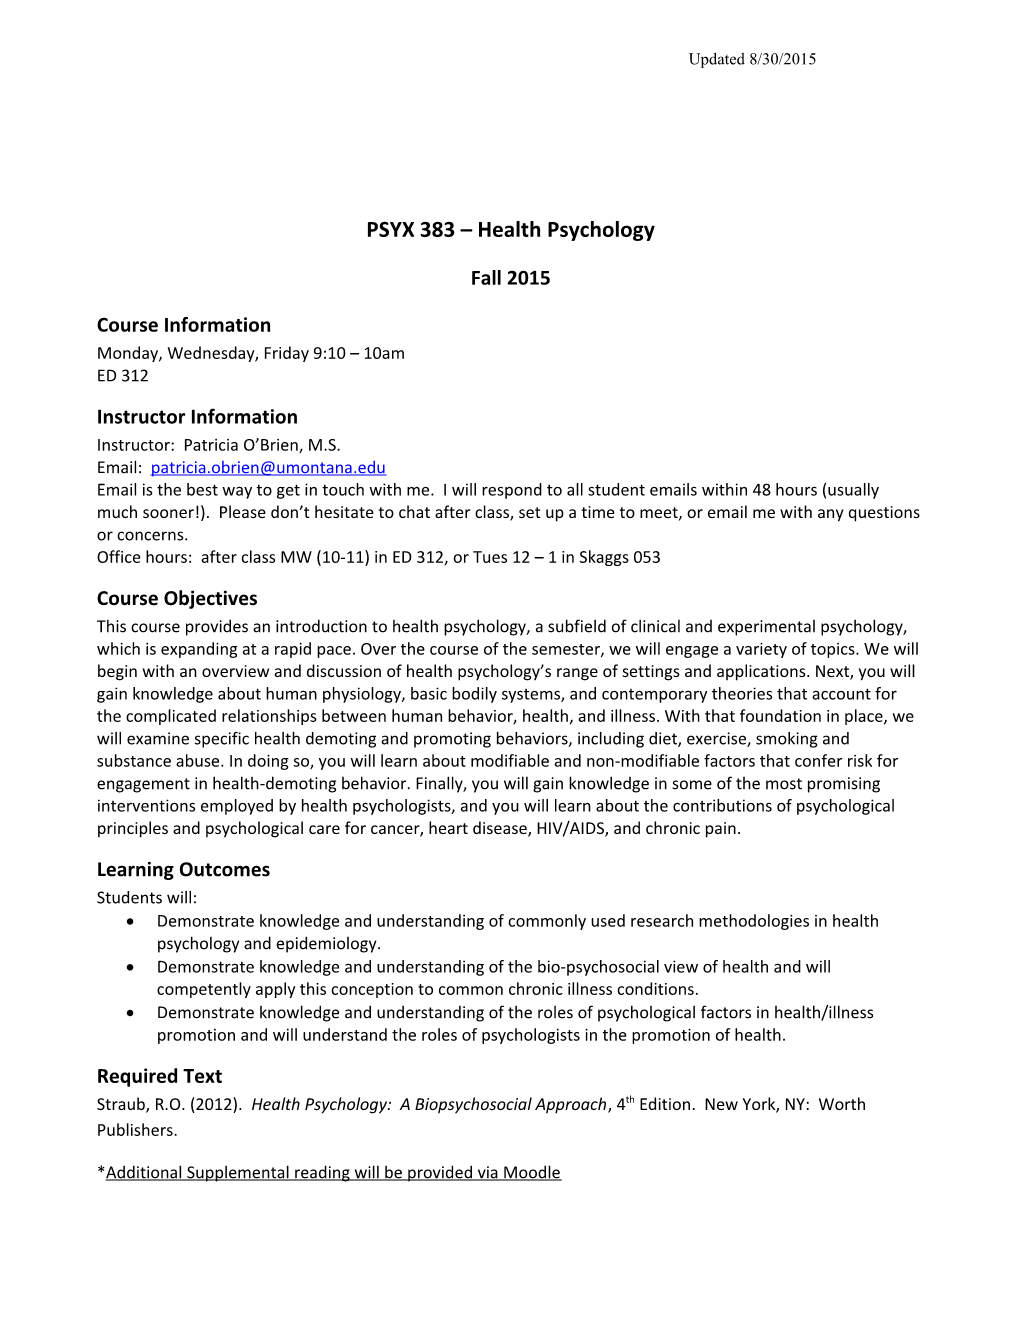 PSYX 383 Health Psychology